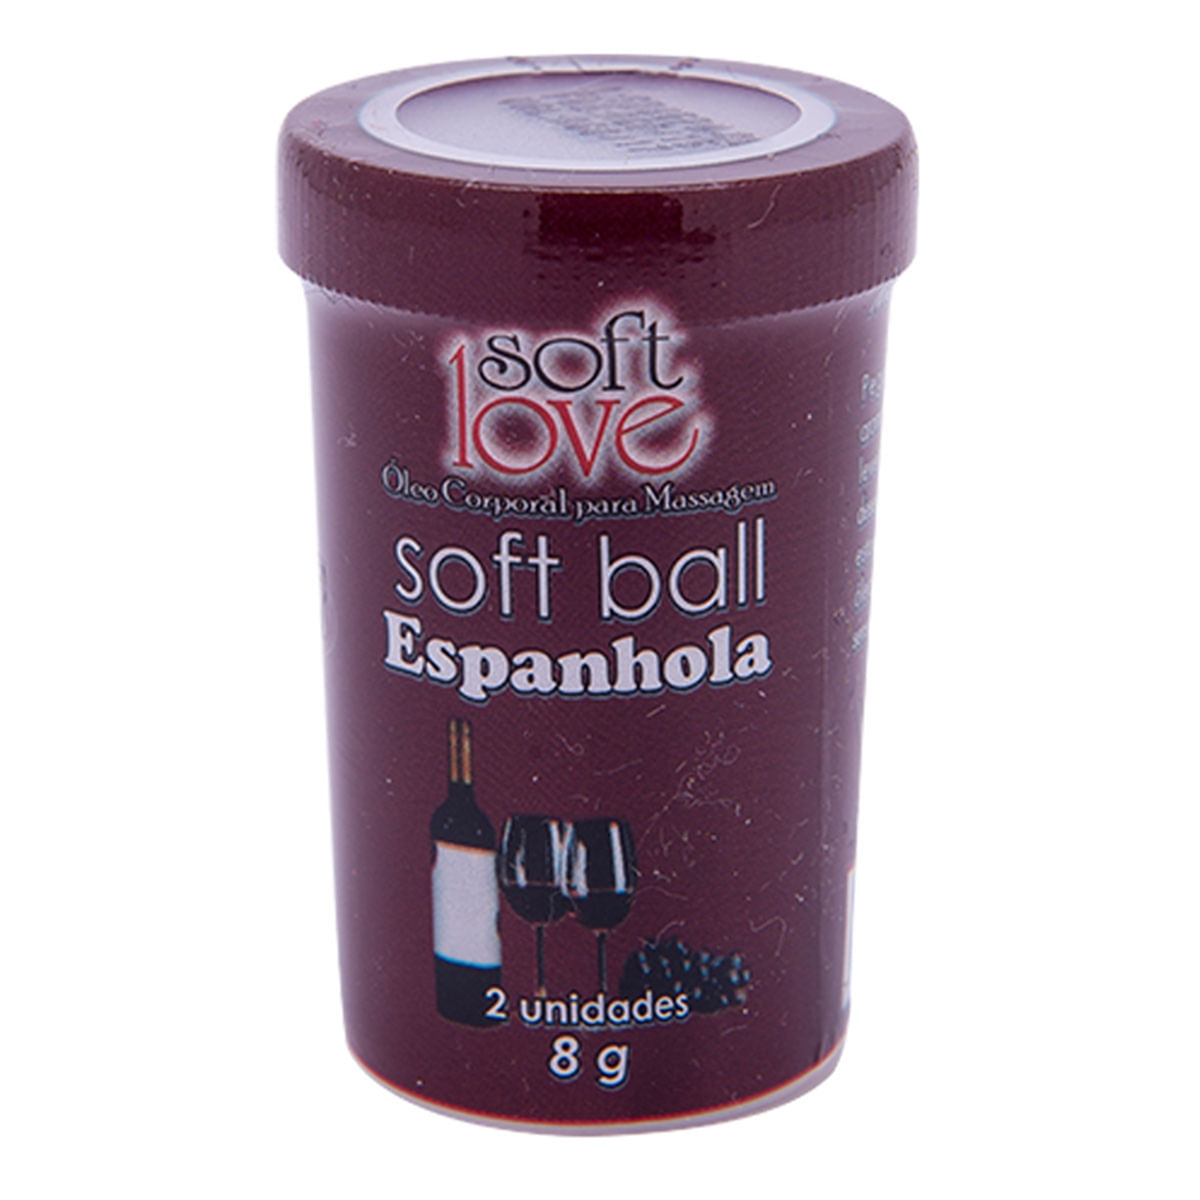 Soft Ball Espanhola Óleo Corporal para Massagem Beijável 2 uni Soft Love